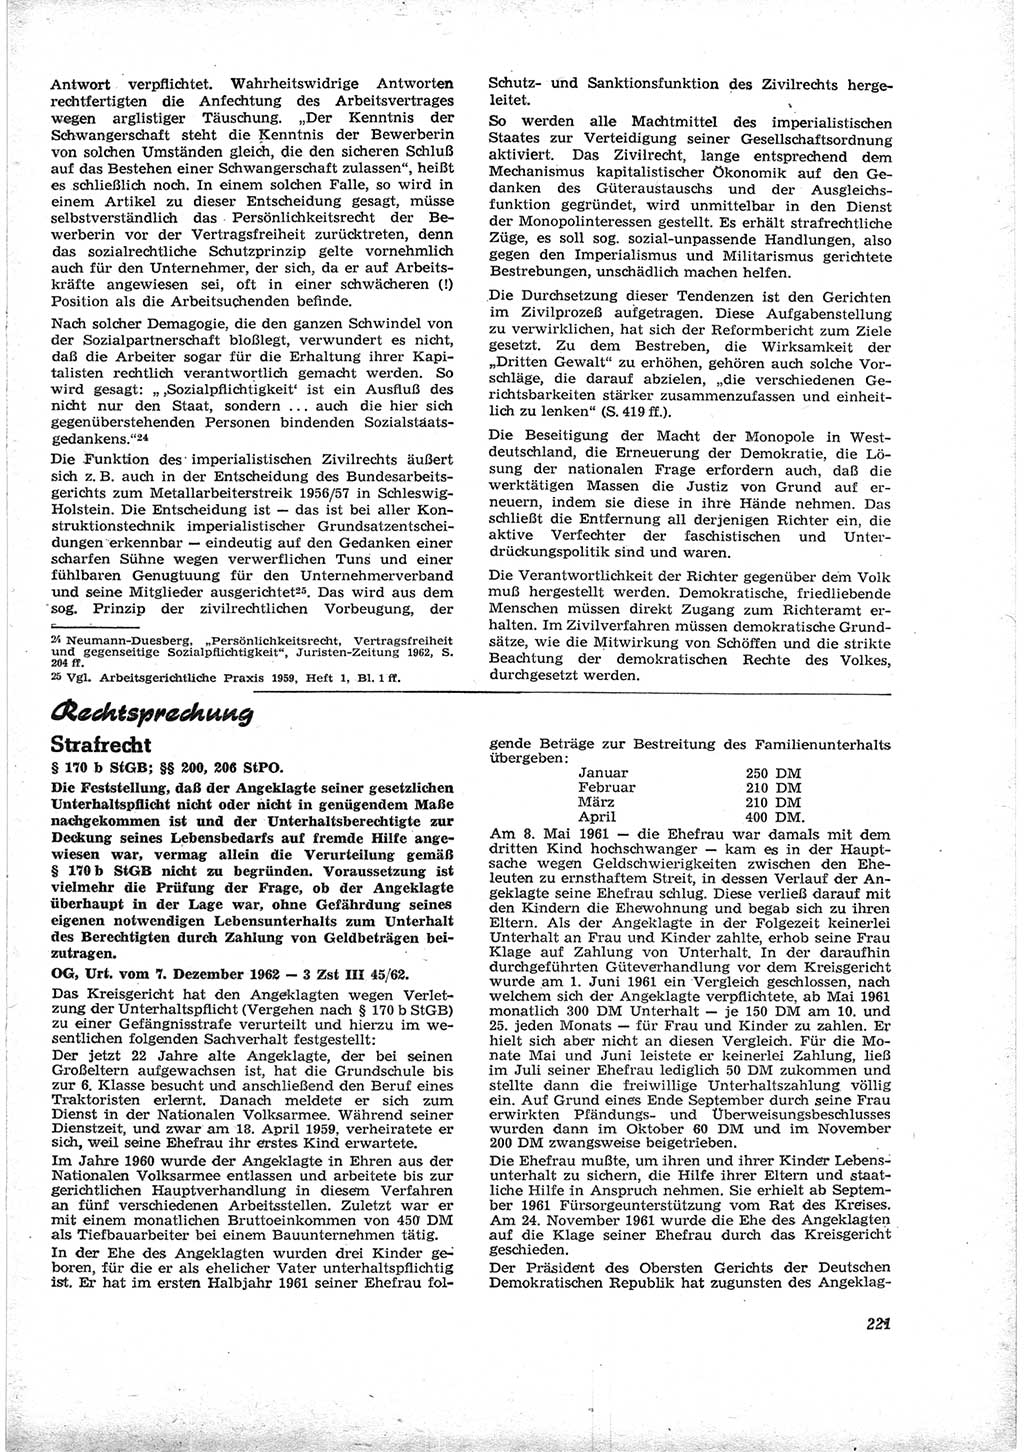 Neue Justiz (NJ), Zeitschrift für Recht und Rechtswissenschaft [Deutsche Demokratische Republik (DDR)], 17. Jahrgang 1963, Seite 221 (NJ DDR 1963, S. 221)